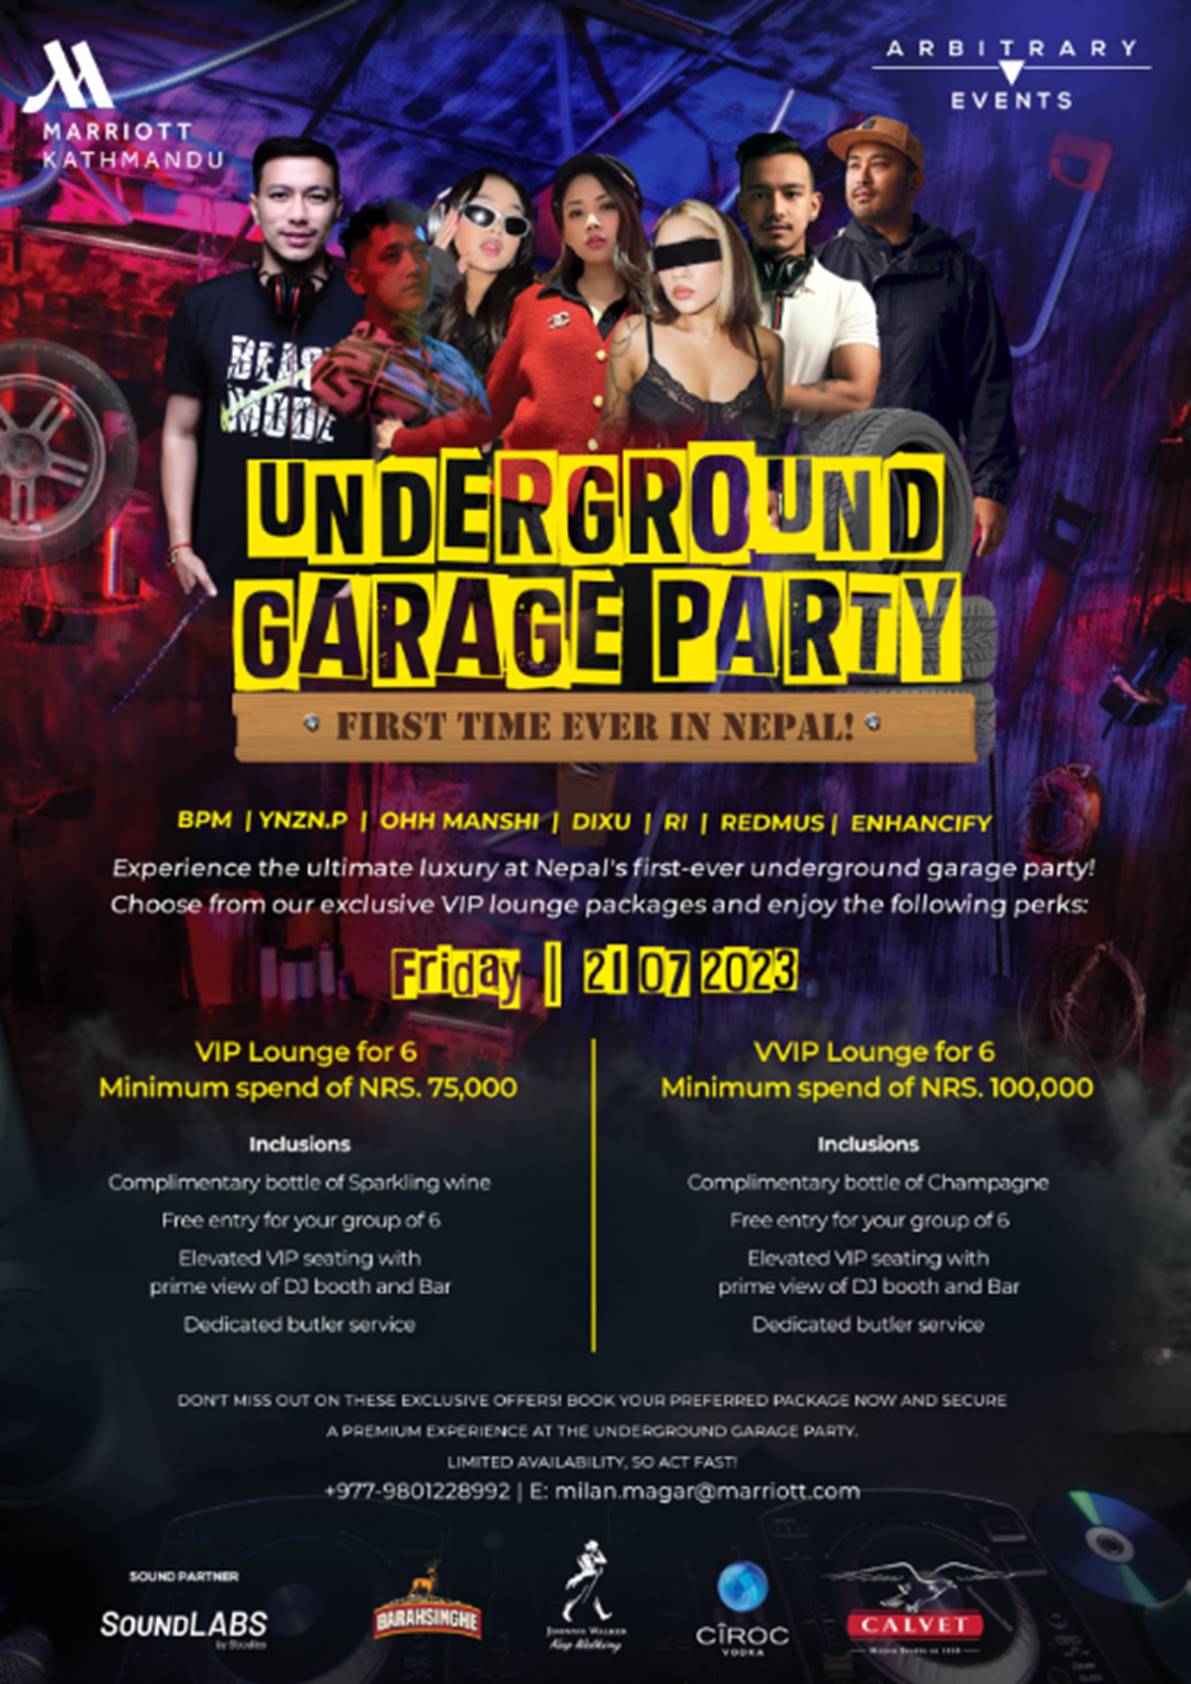 Marriott Kathmandu organizing Underground Garage Party